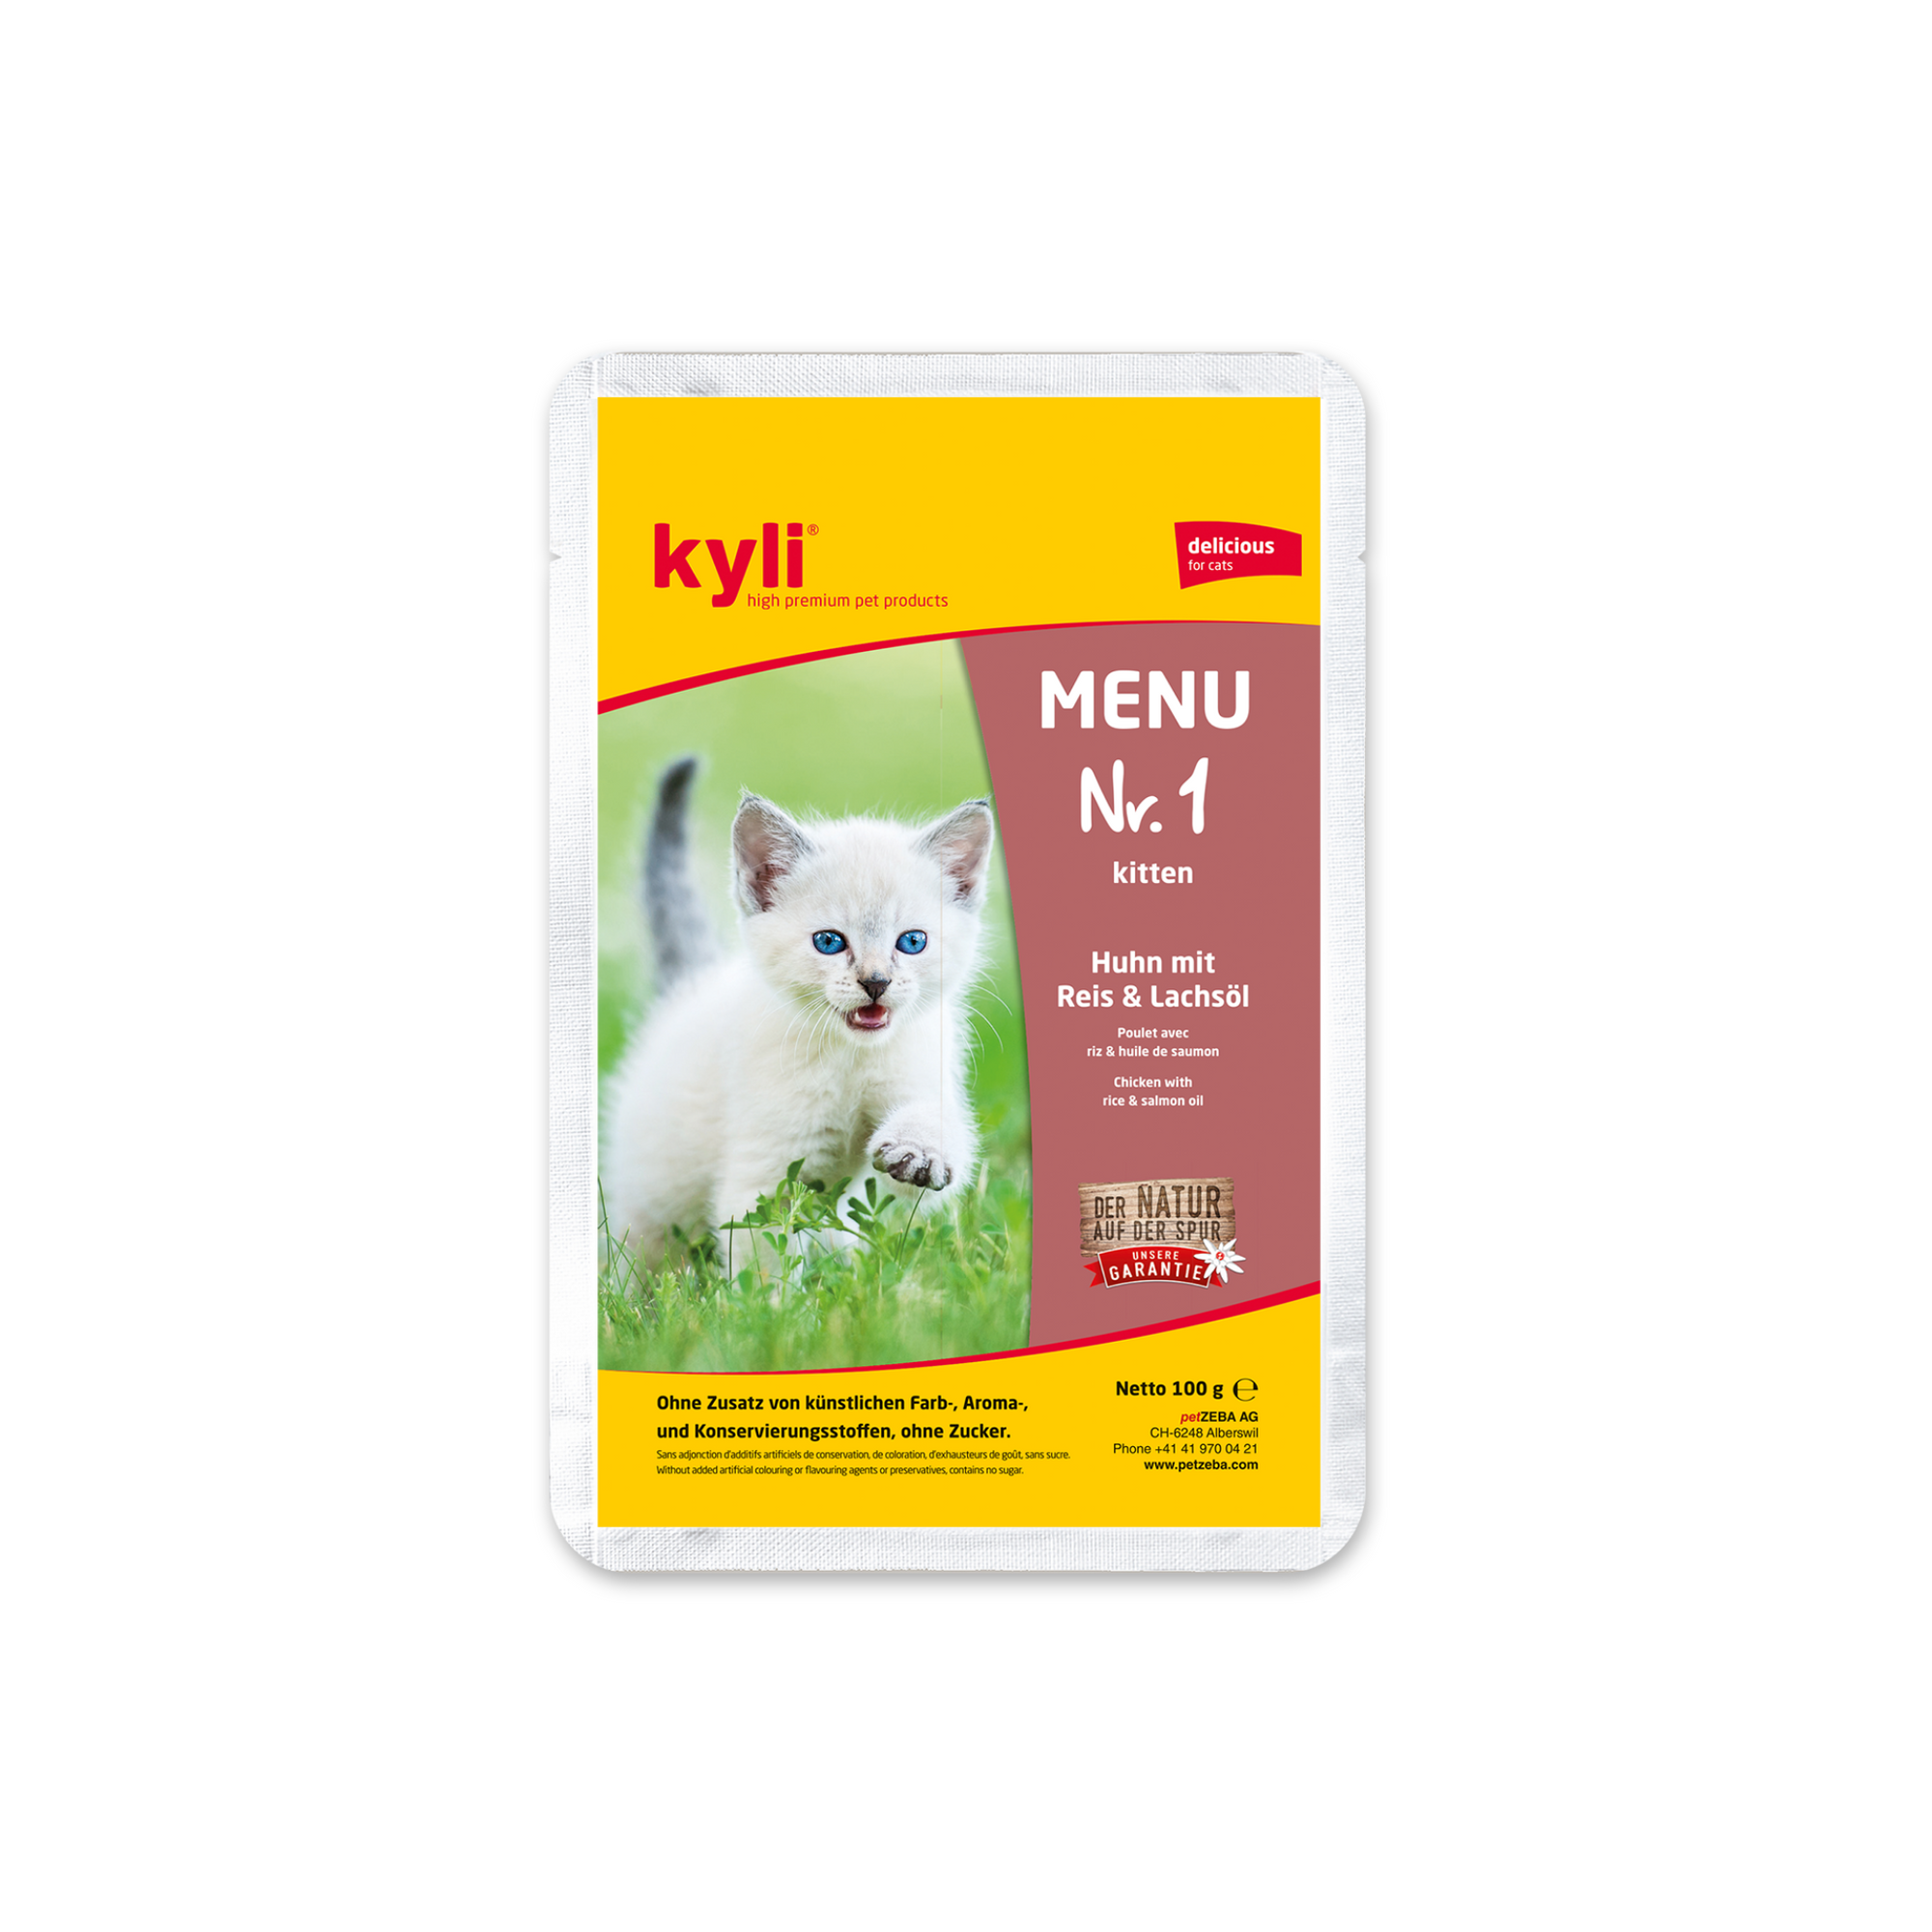 Artikel mit dem Namen Kyli Menu Nr. 1 Kitten im Shop von zoo.de , dem Onlineshop für nachhaltiges Hundefutter und Katzenfutter.